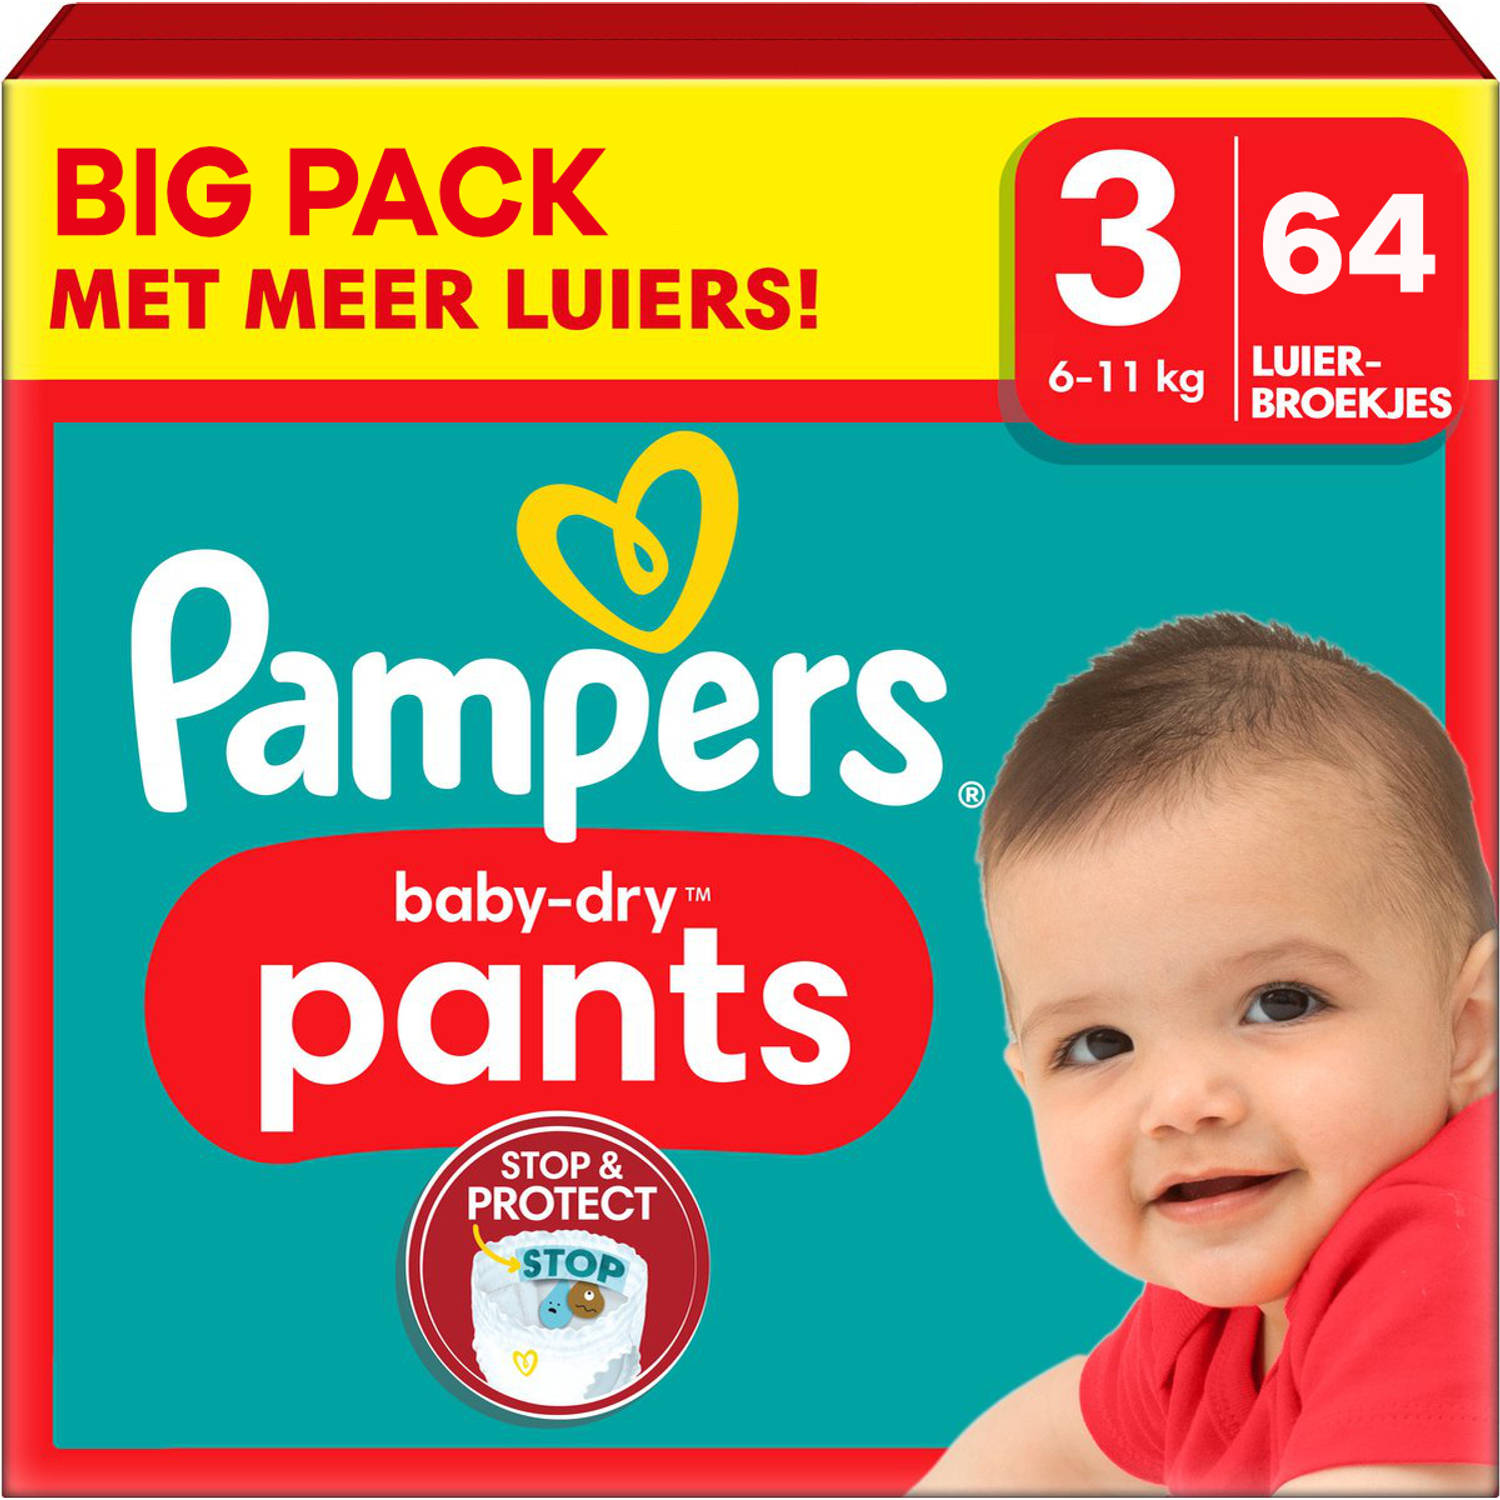 Pampers Baby Dry Pants Maat 3 Big Pack 64 luierbroekjes